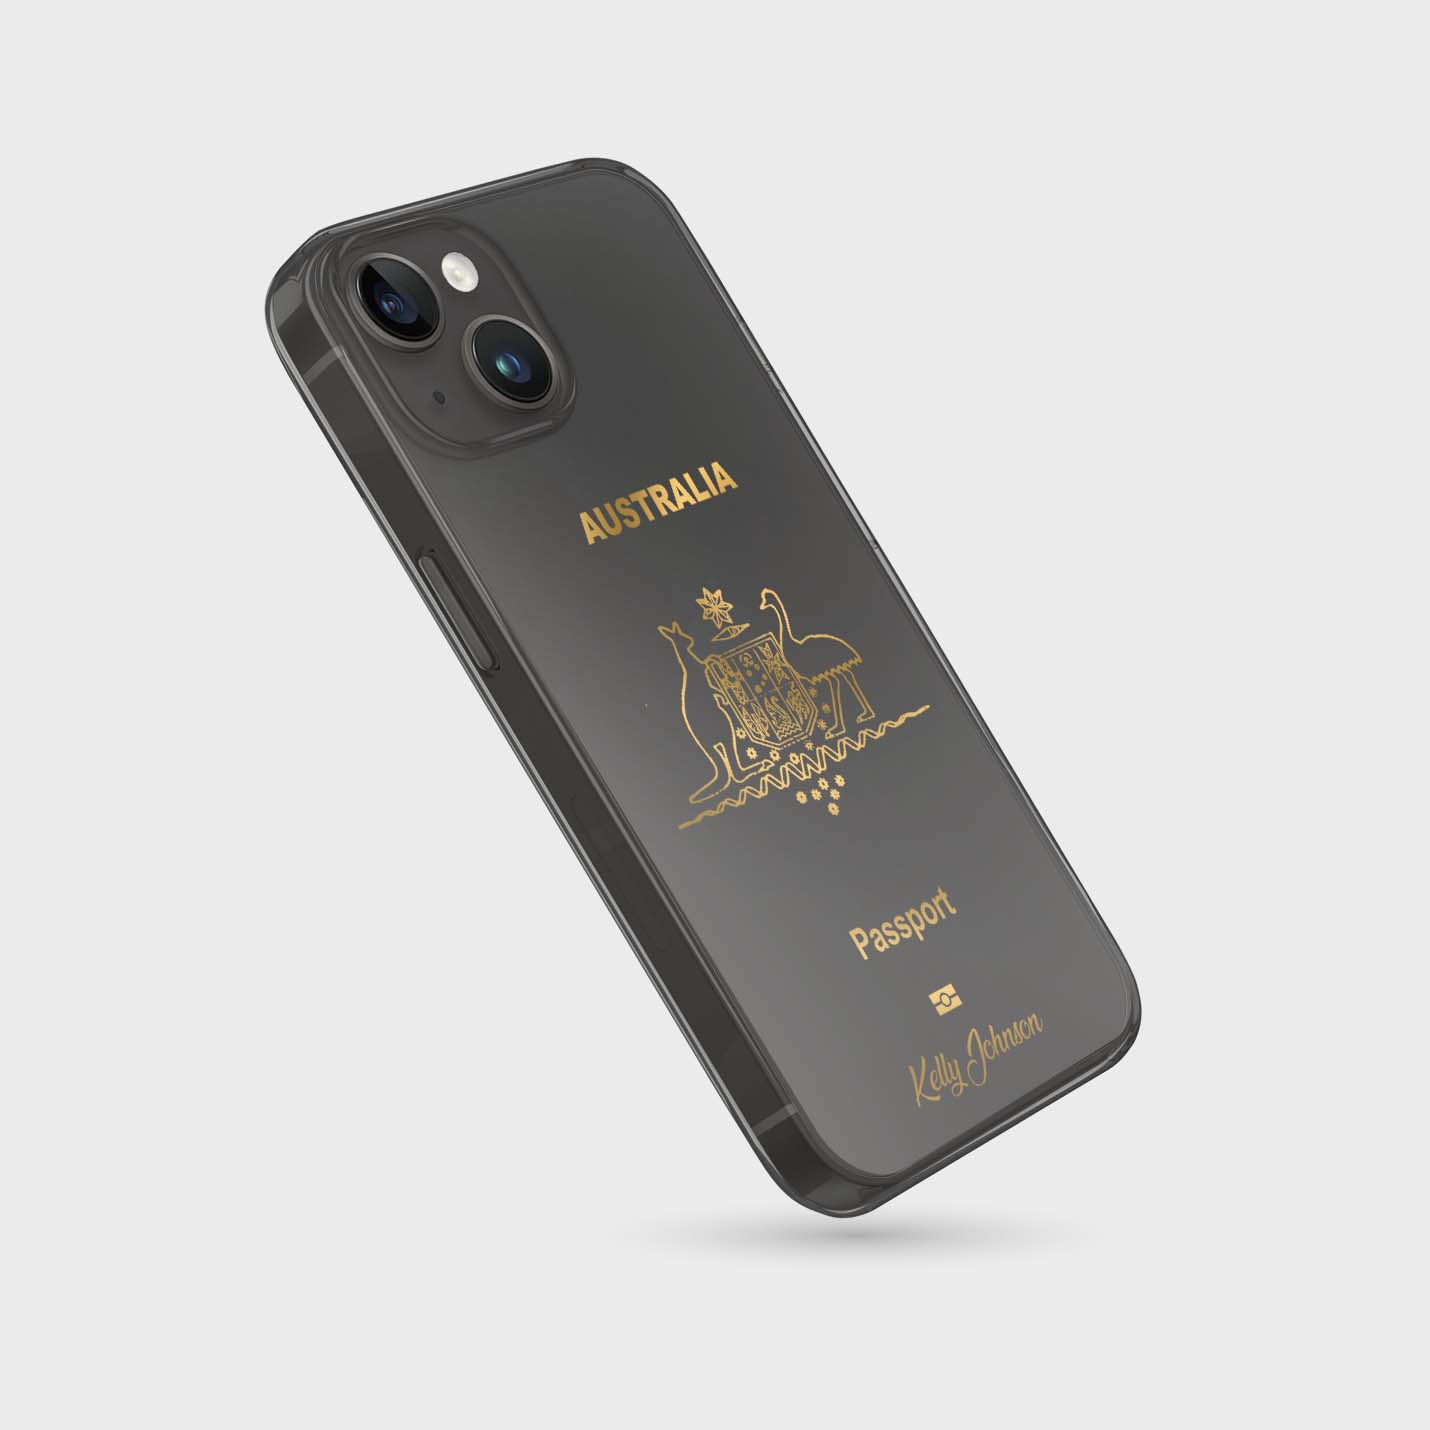 Handyhüllen mit Reisepass - Australien - 1instaphone